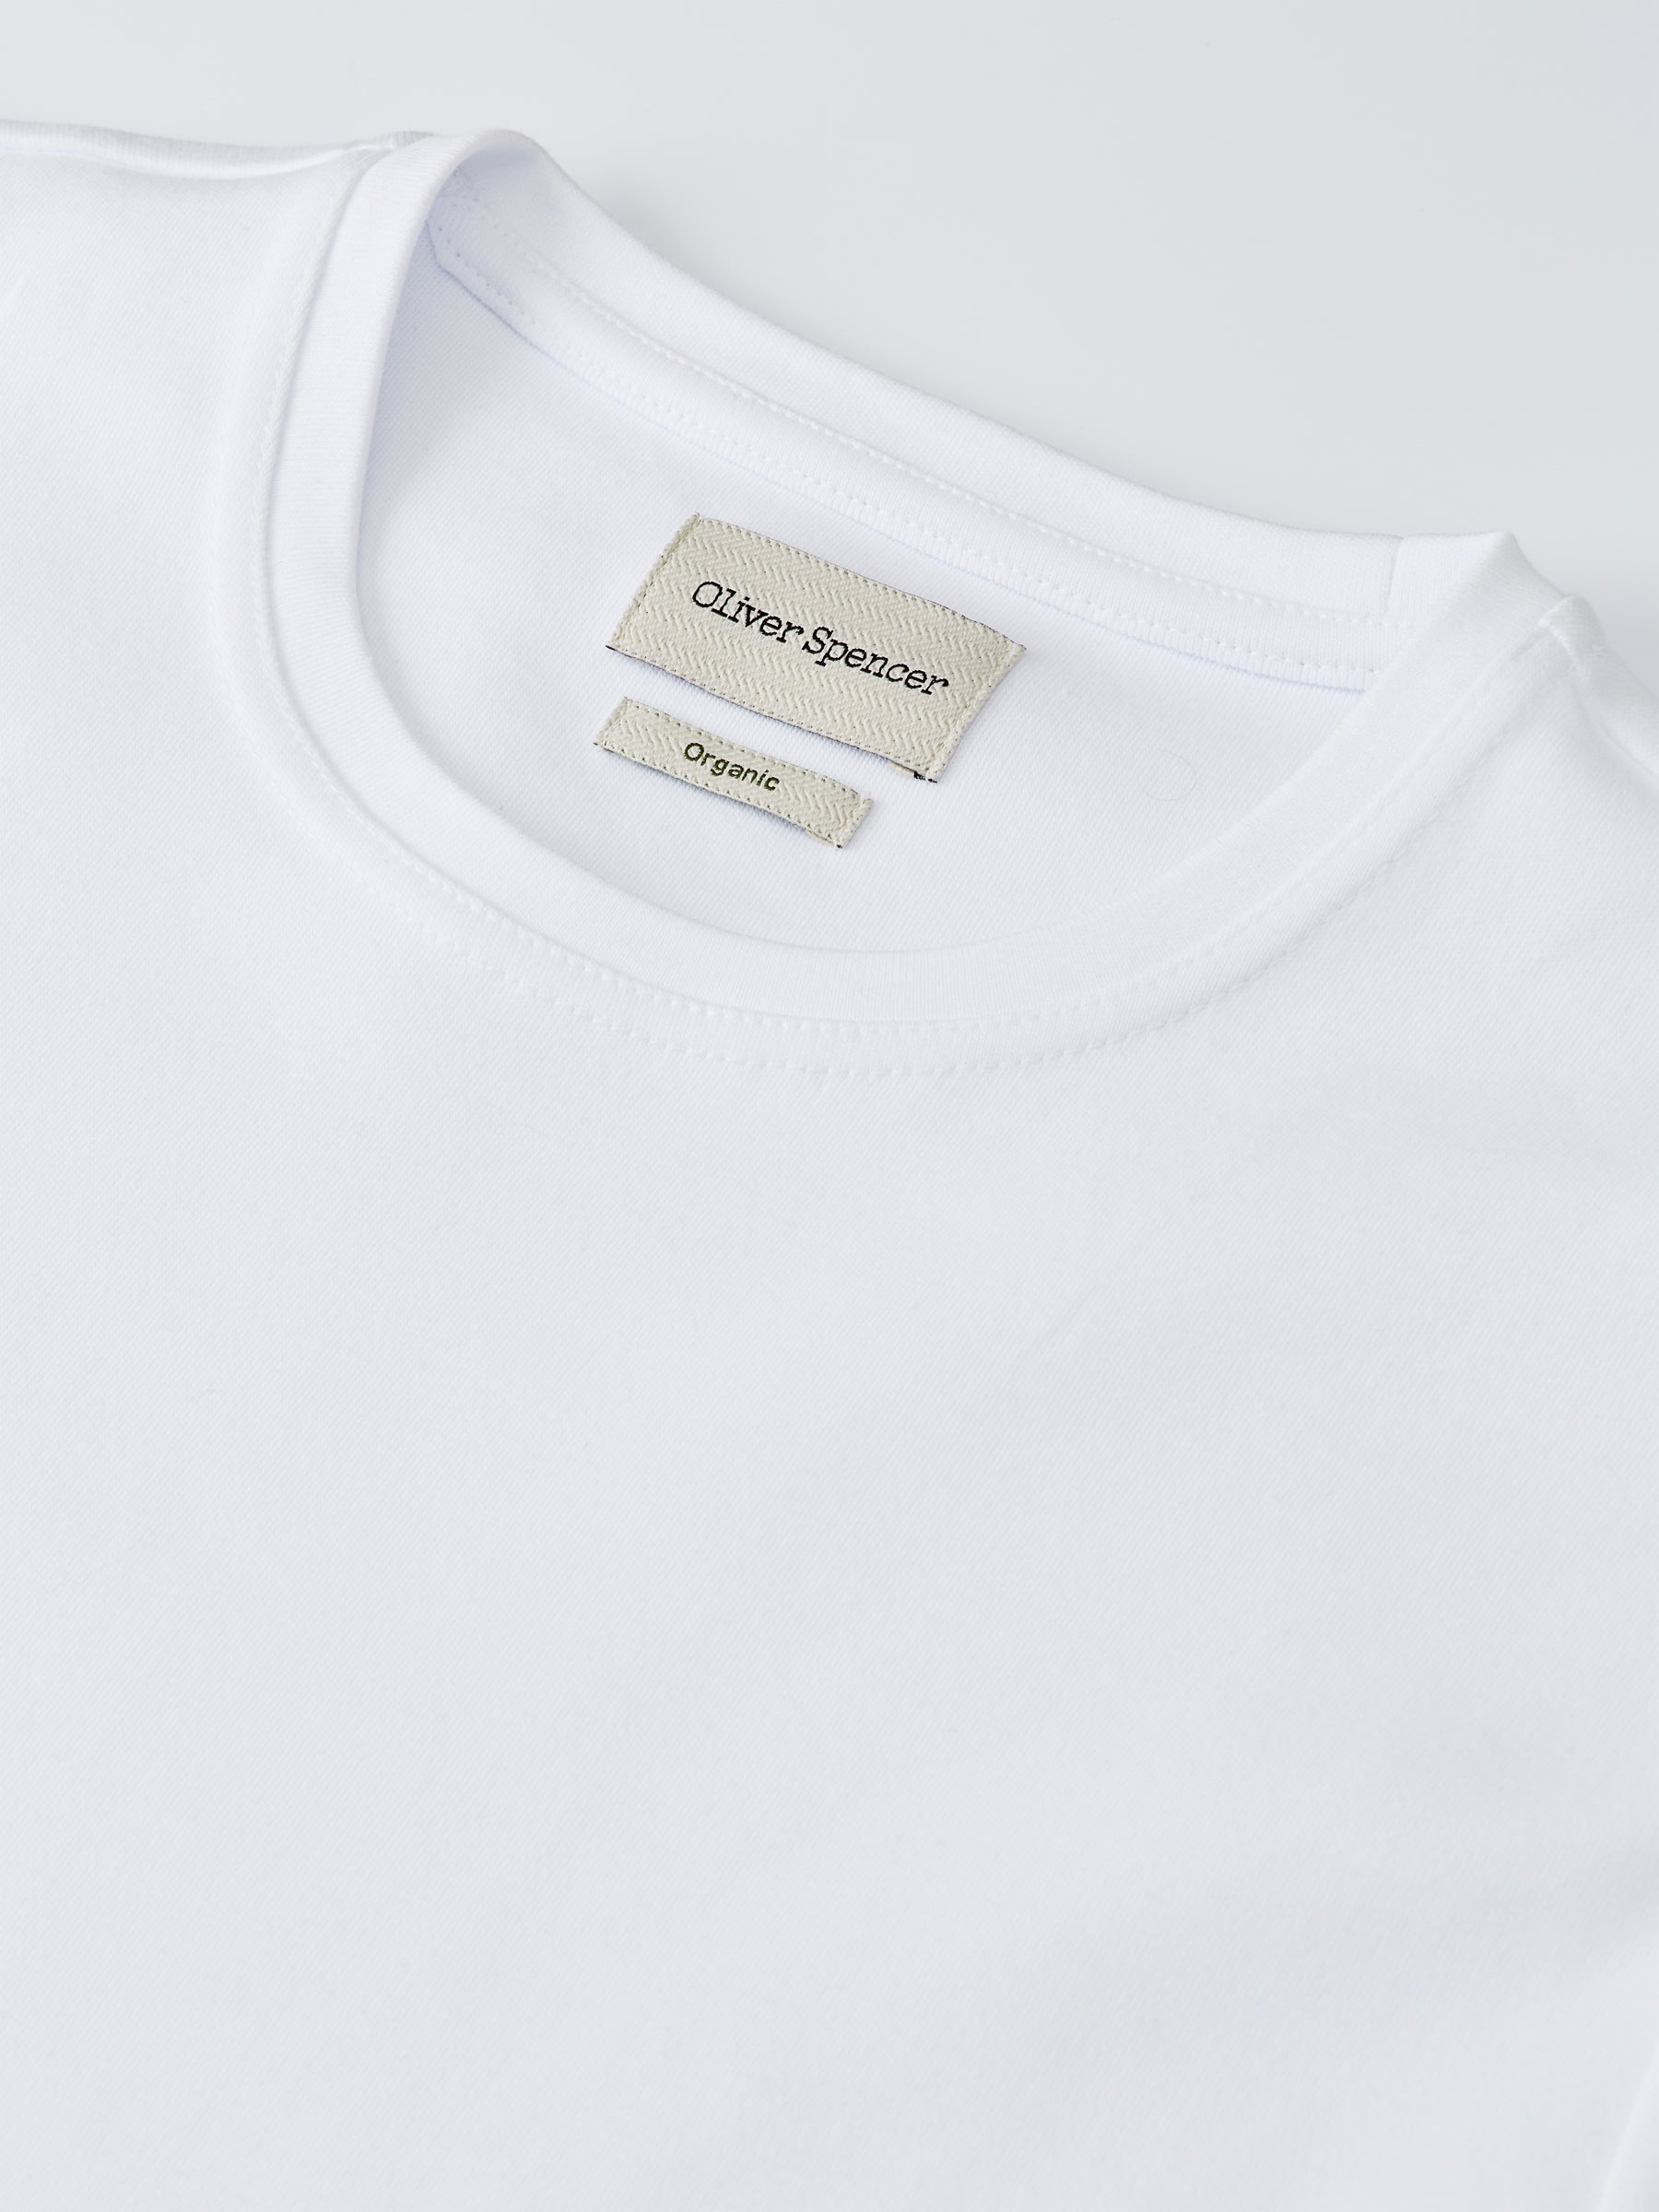 Heavy T-Shirt Tavistock White